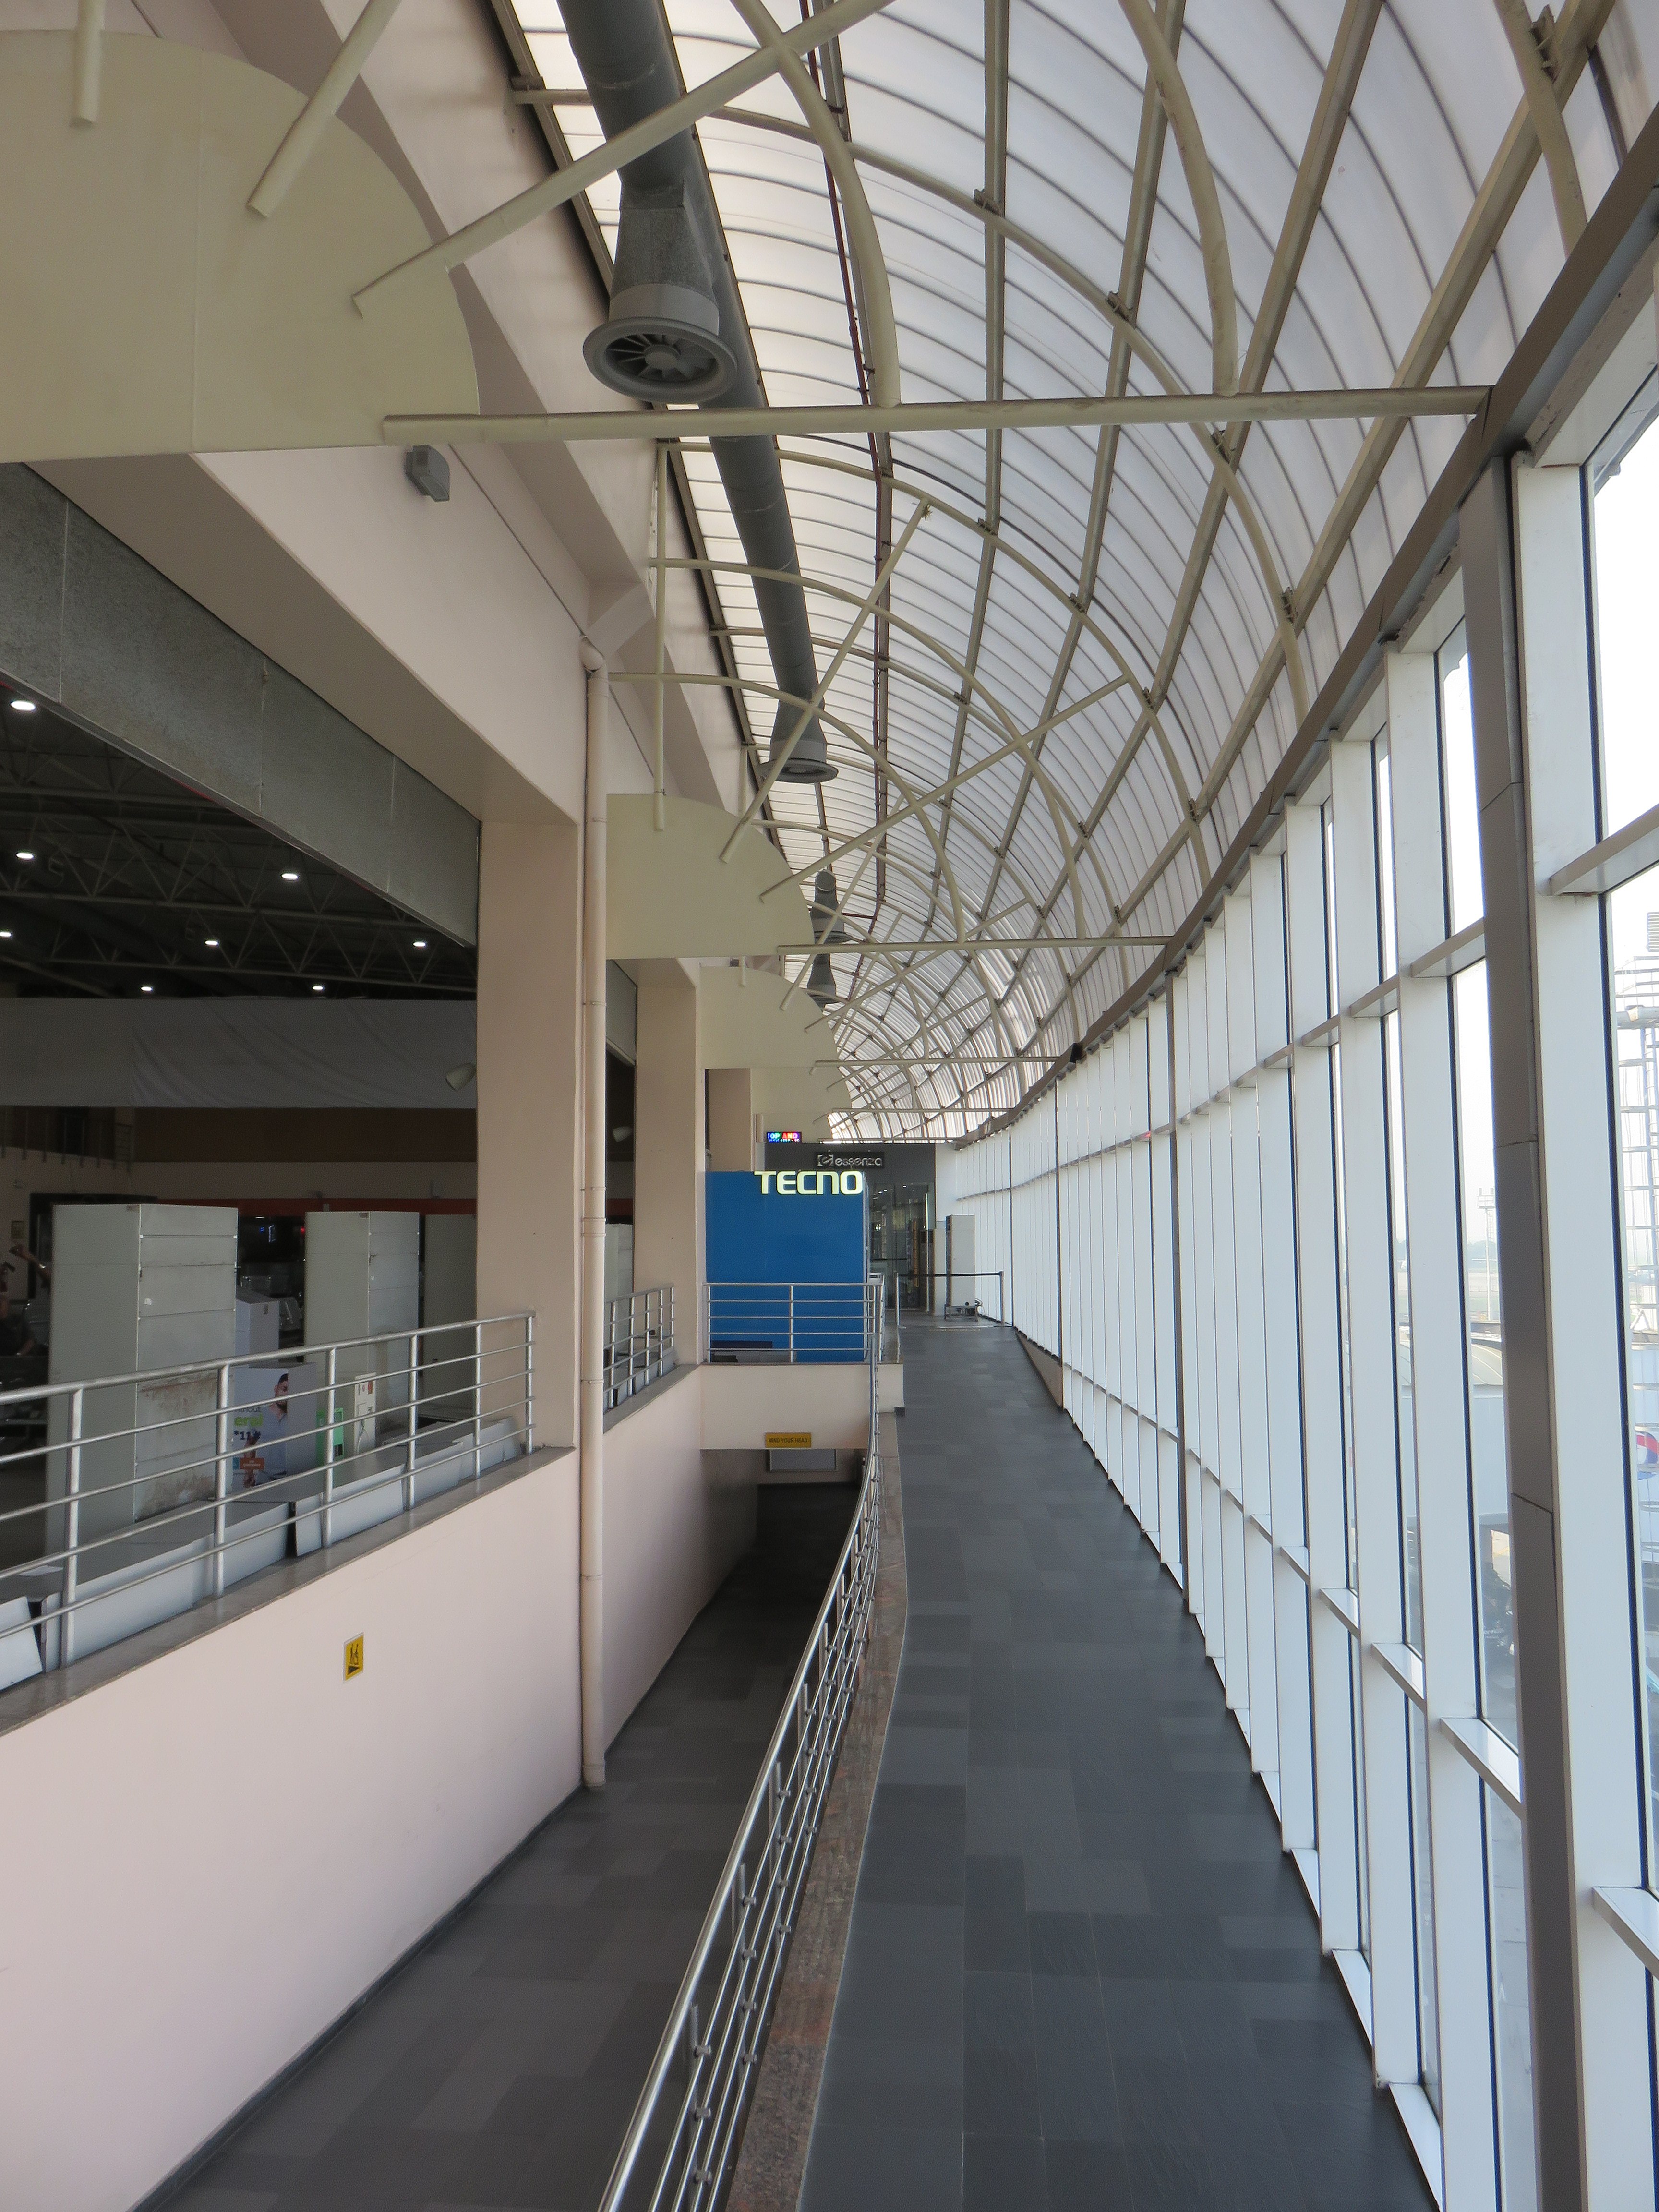 Murtala Muhammed International Airport - Wikipedia